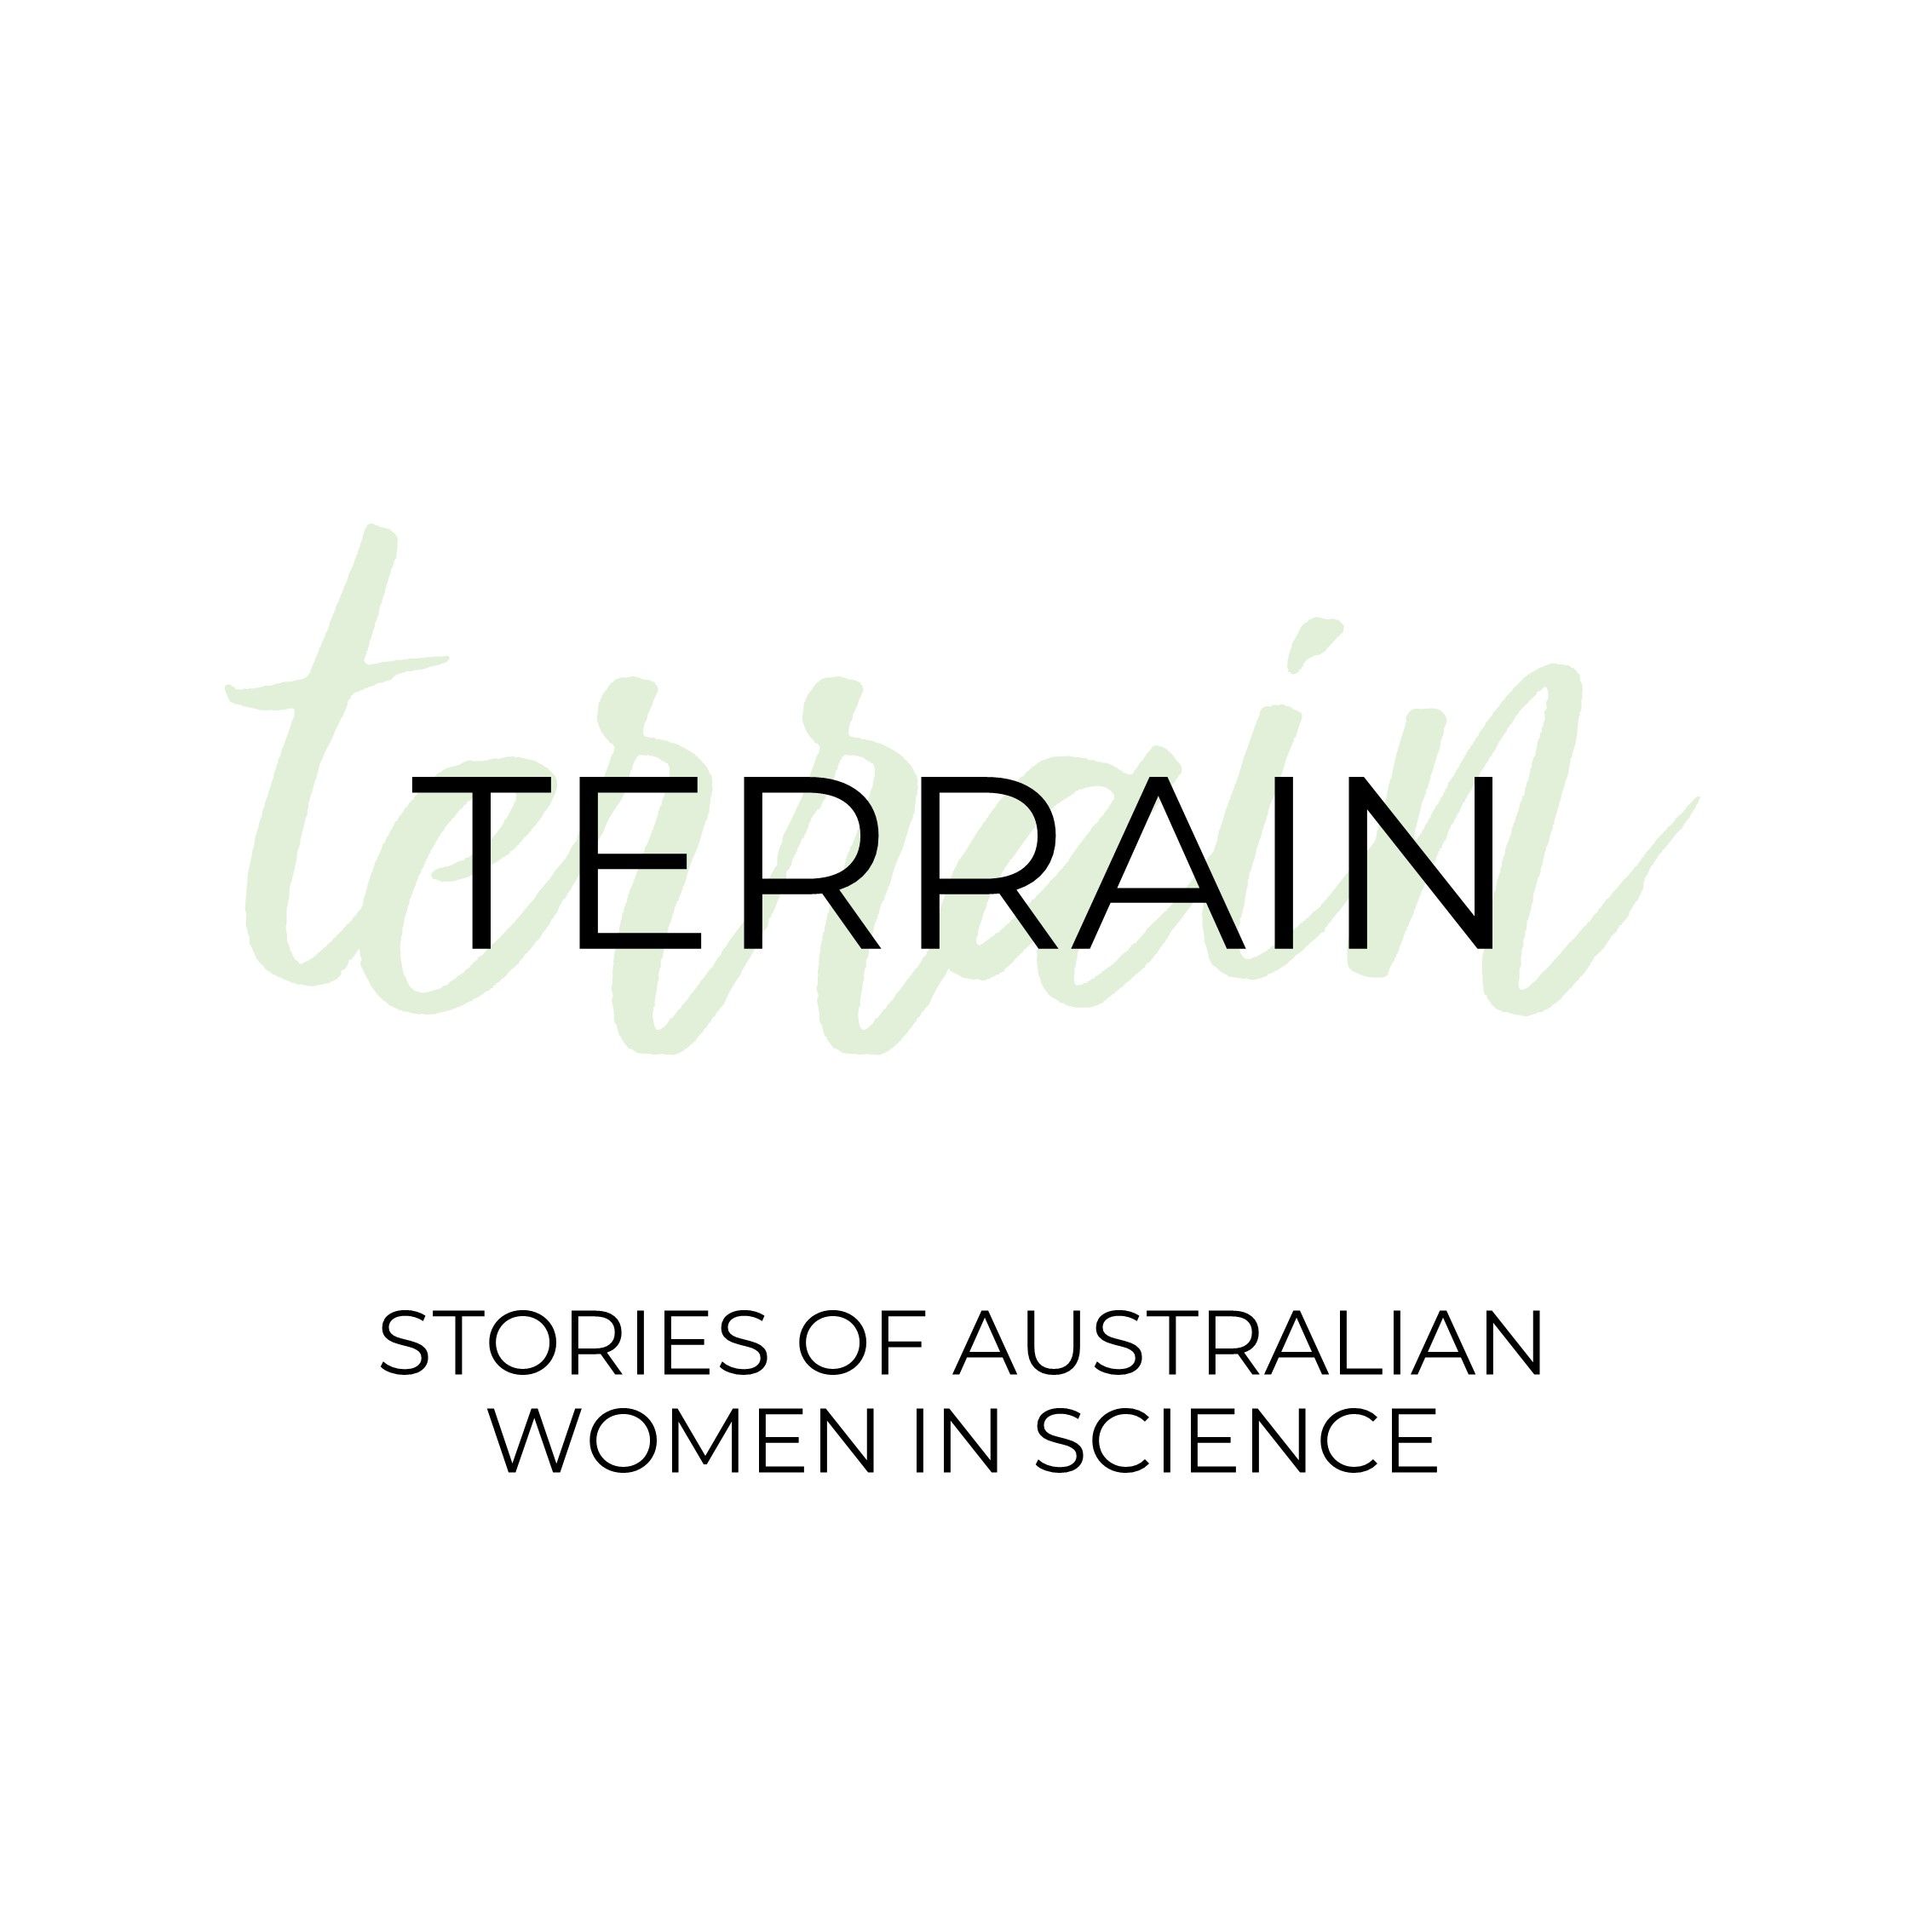 Terrain | Stories of Australian Women in Science